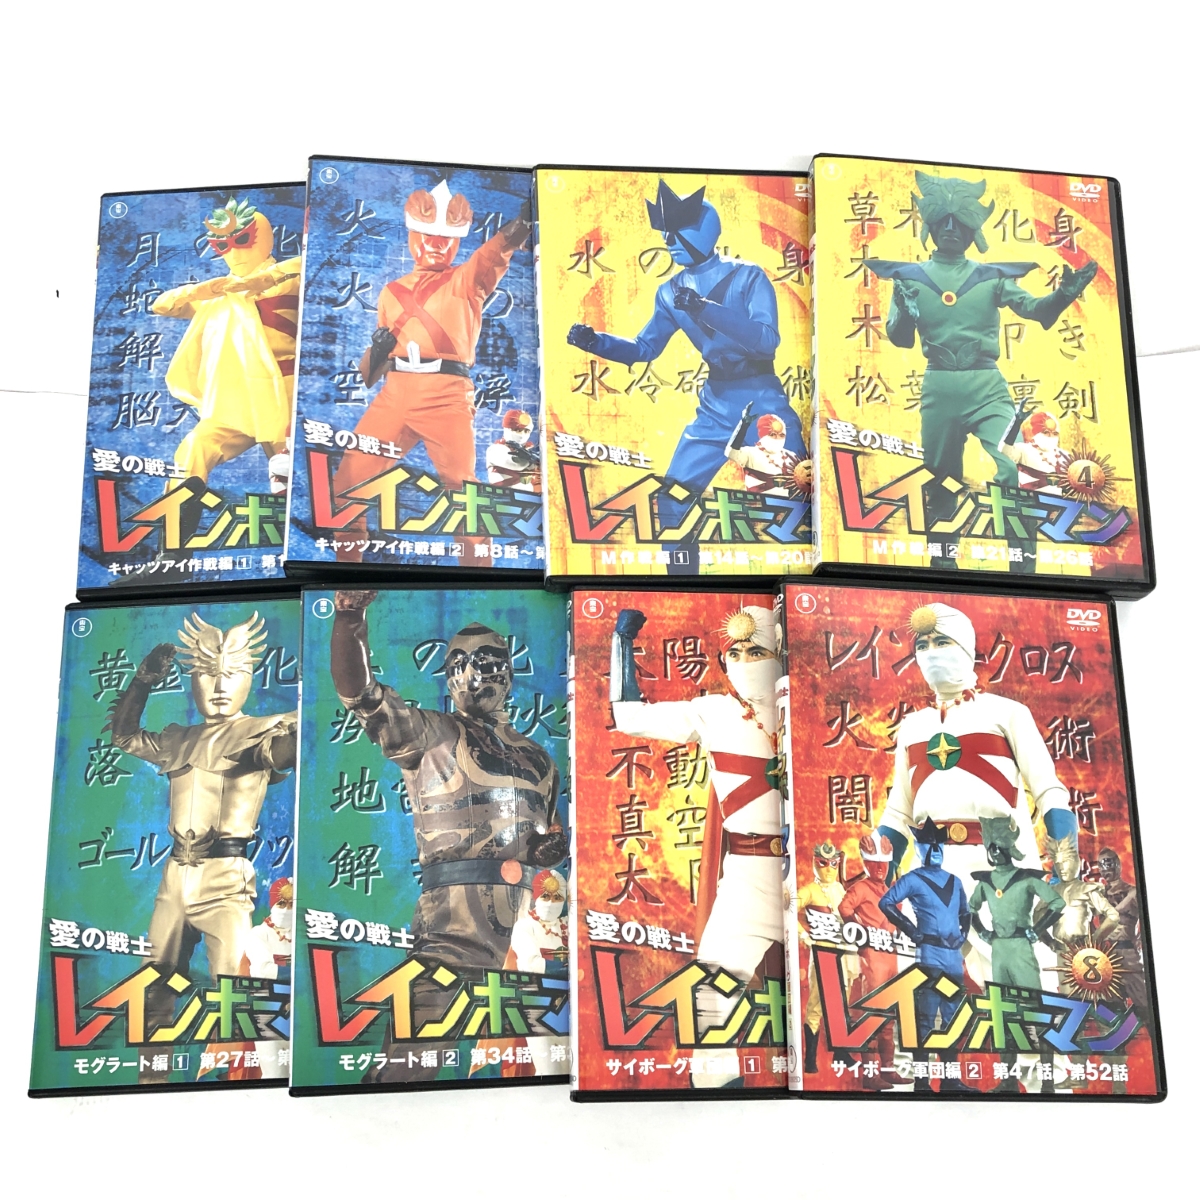 ☆送料☆無料☆! 東宝 TOHO 愛の戦士レインボーマン DVD 全8巻セット